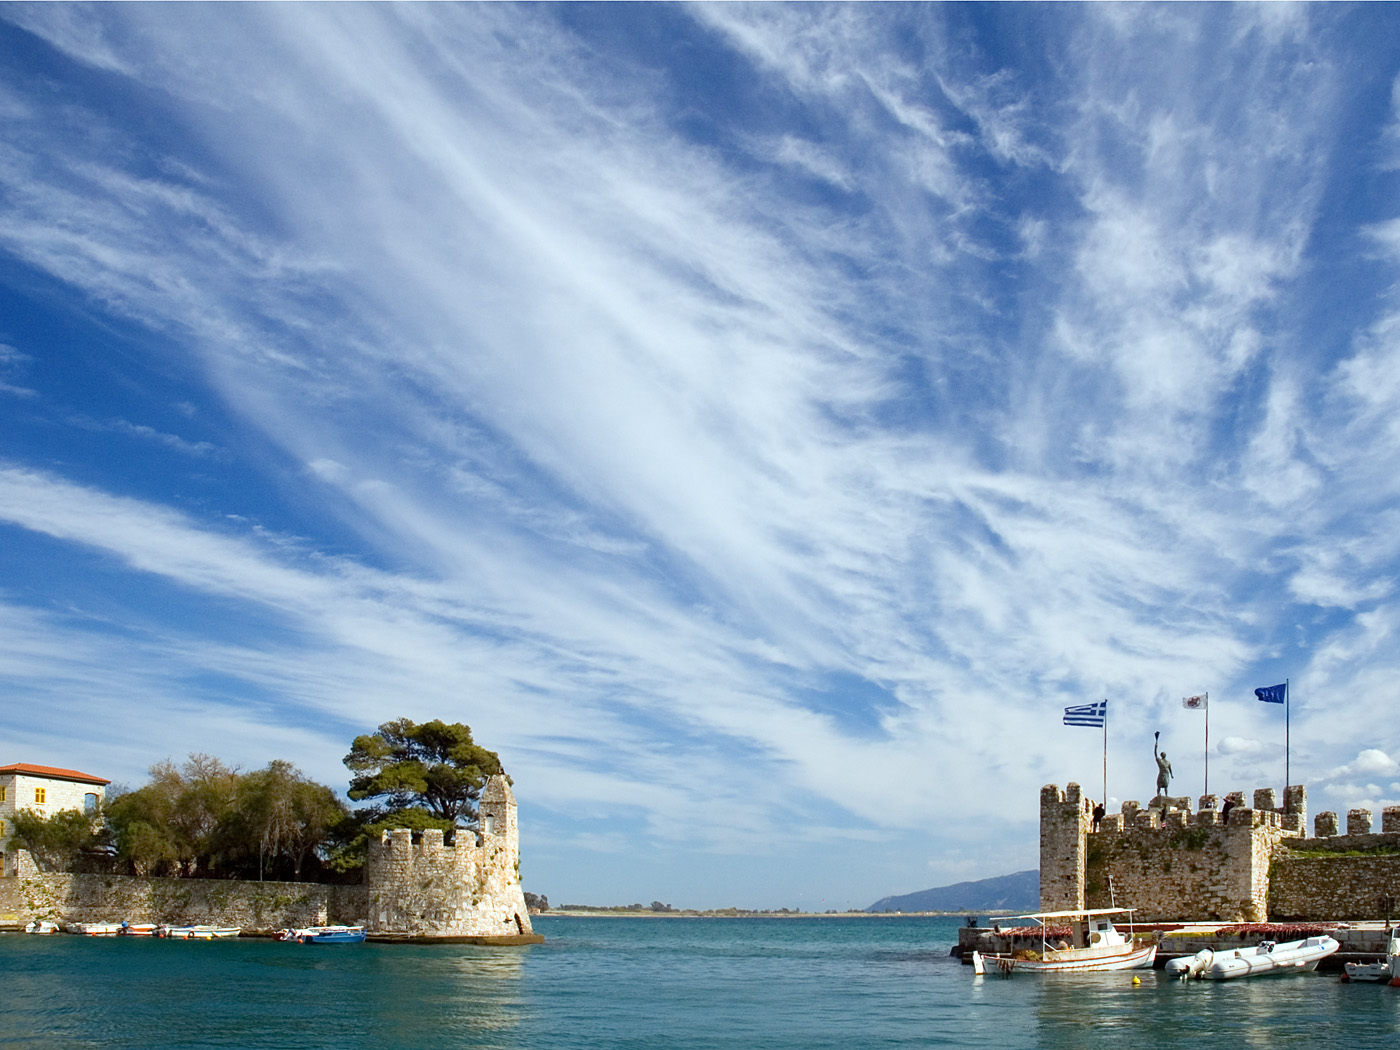 Το κάστρο αποτελείται από πέντε διαζώματα Πρώτο διάζωμα: Αρχίζει από το λιμάνι και καταλήγει στο τείχος που απλώνεται κατά μήκος του ρολογιού.